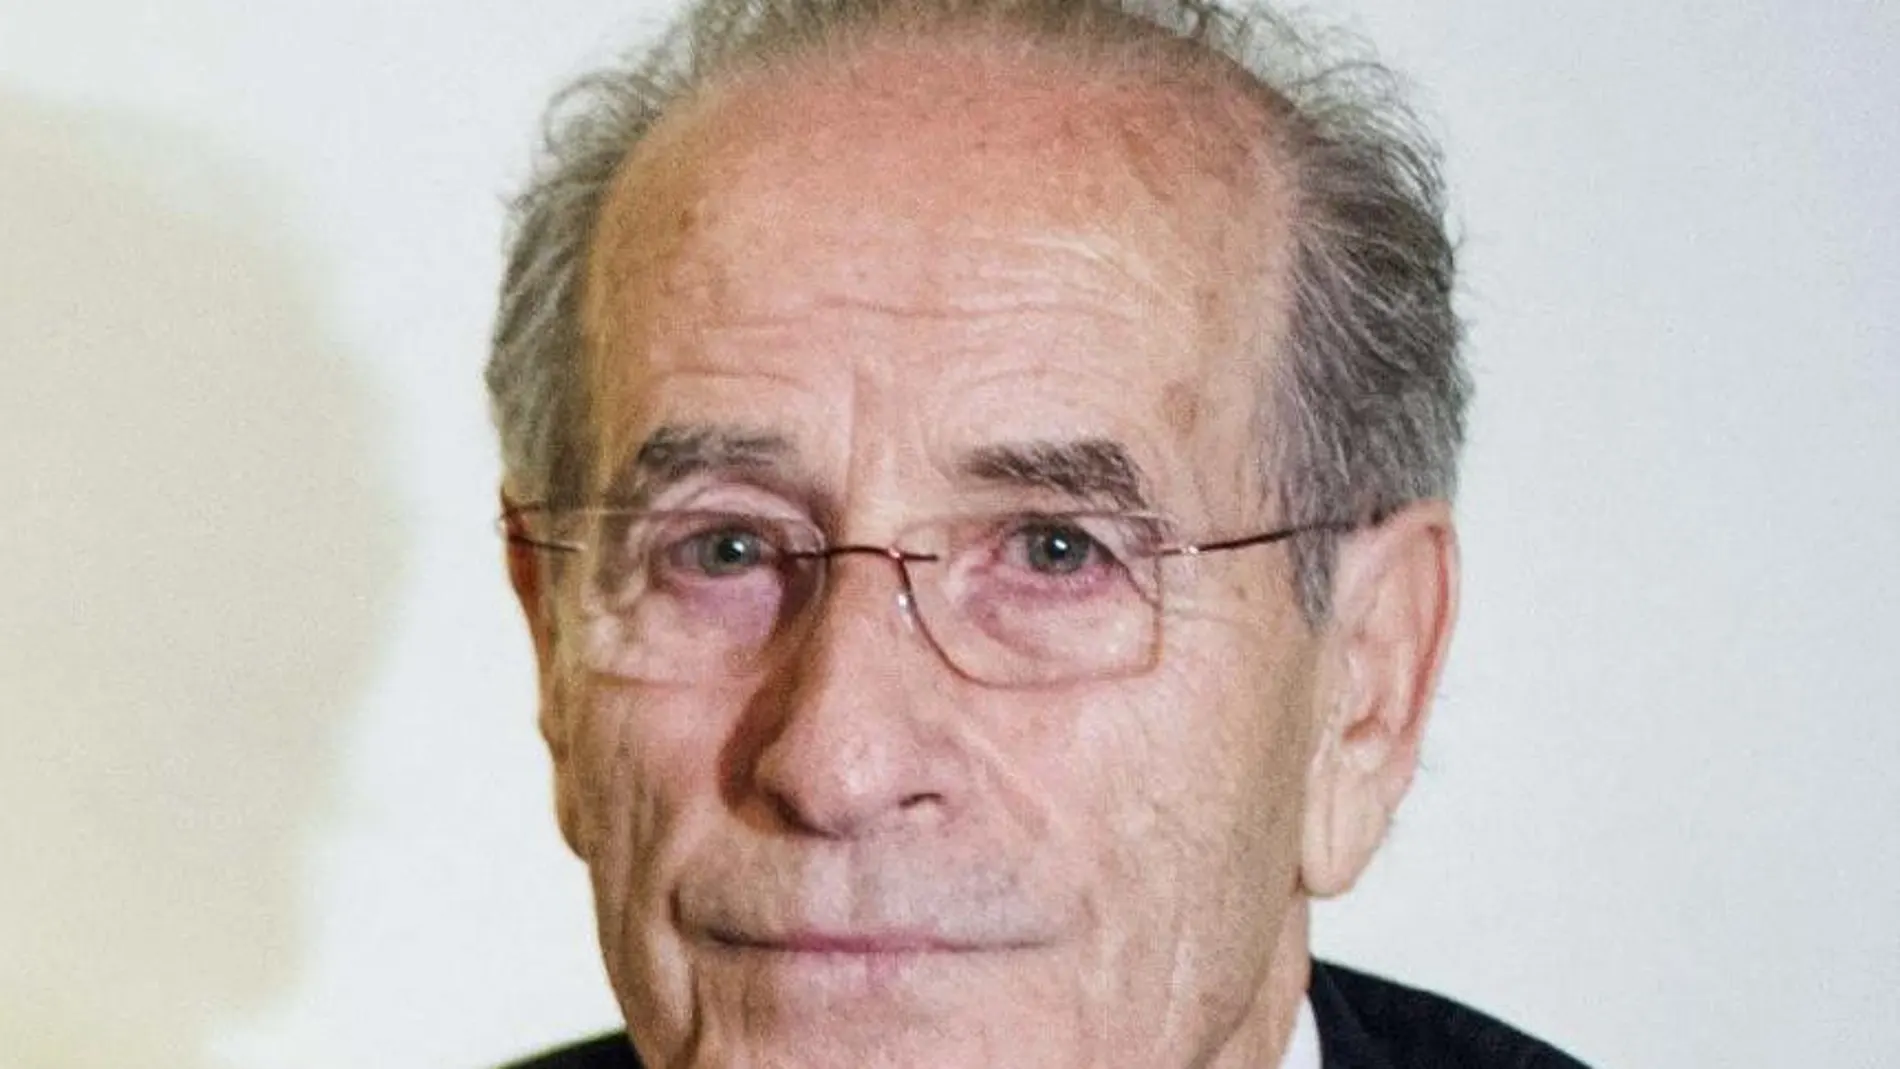 El presidente del grupo lácteo García Baquero, Hersilio García Baquero, el pasado año.